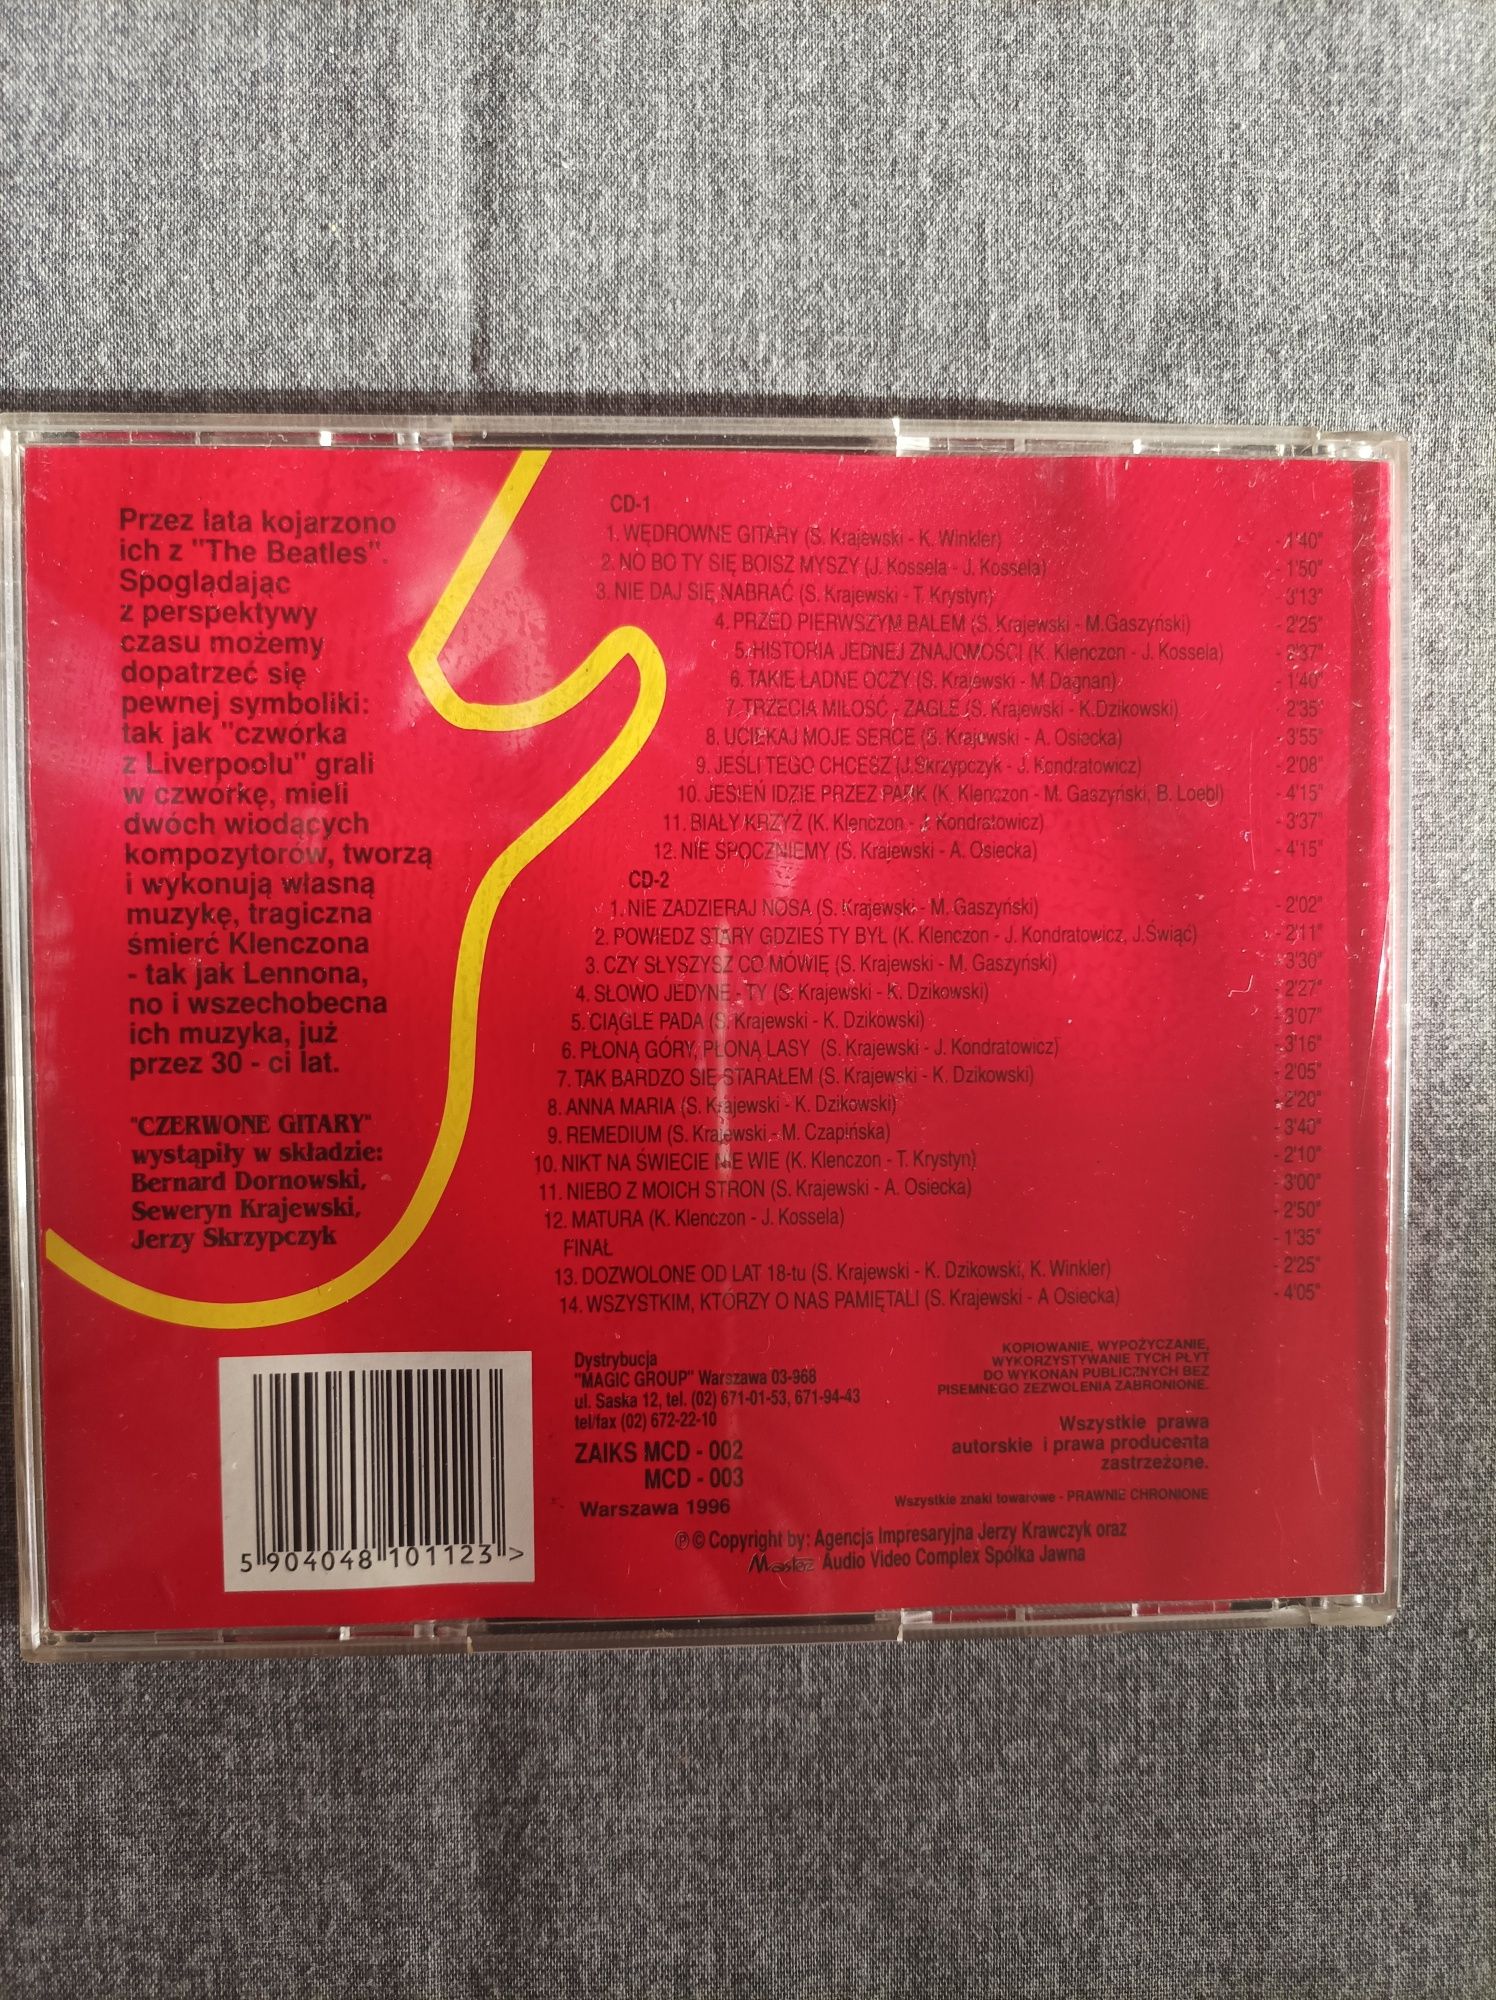 1 - żeCzerwone Gitary - GOLD - 2 x CD